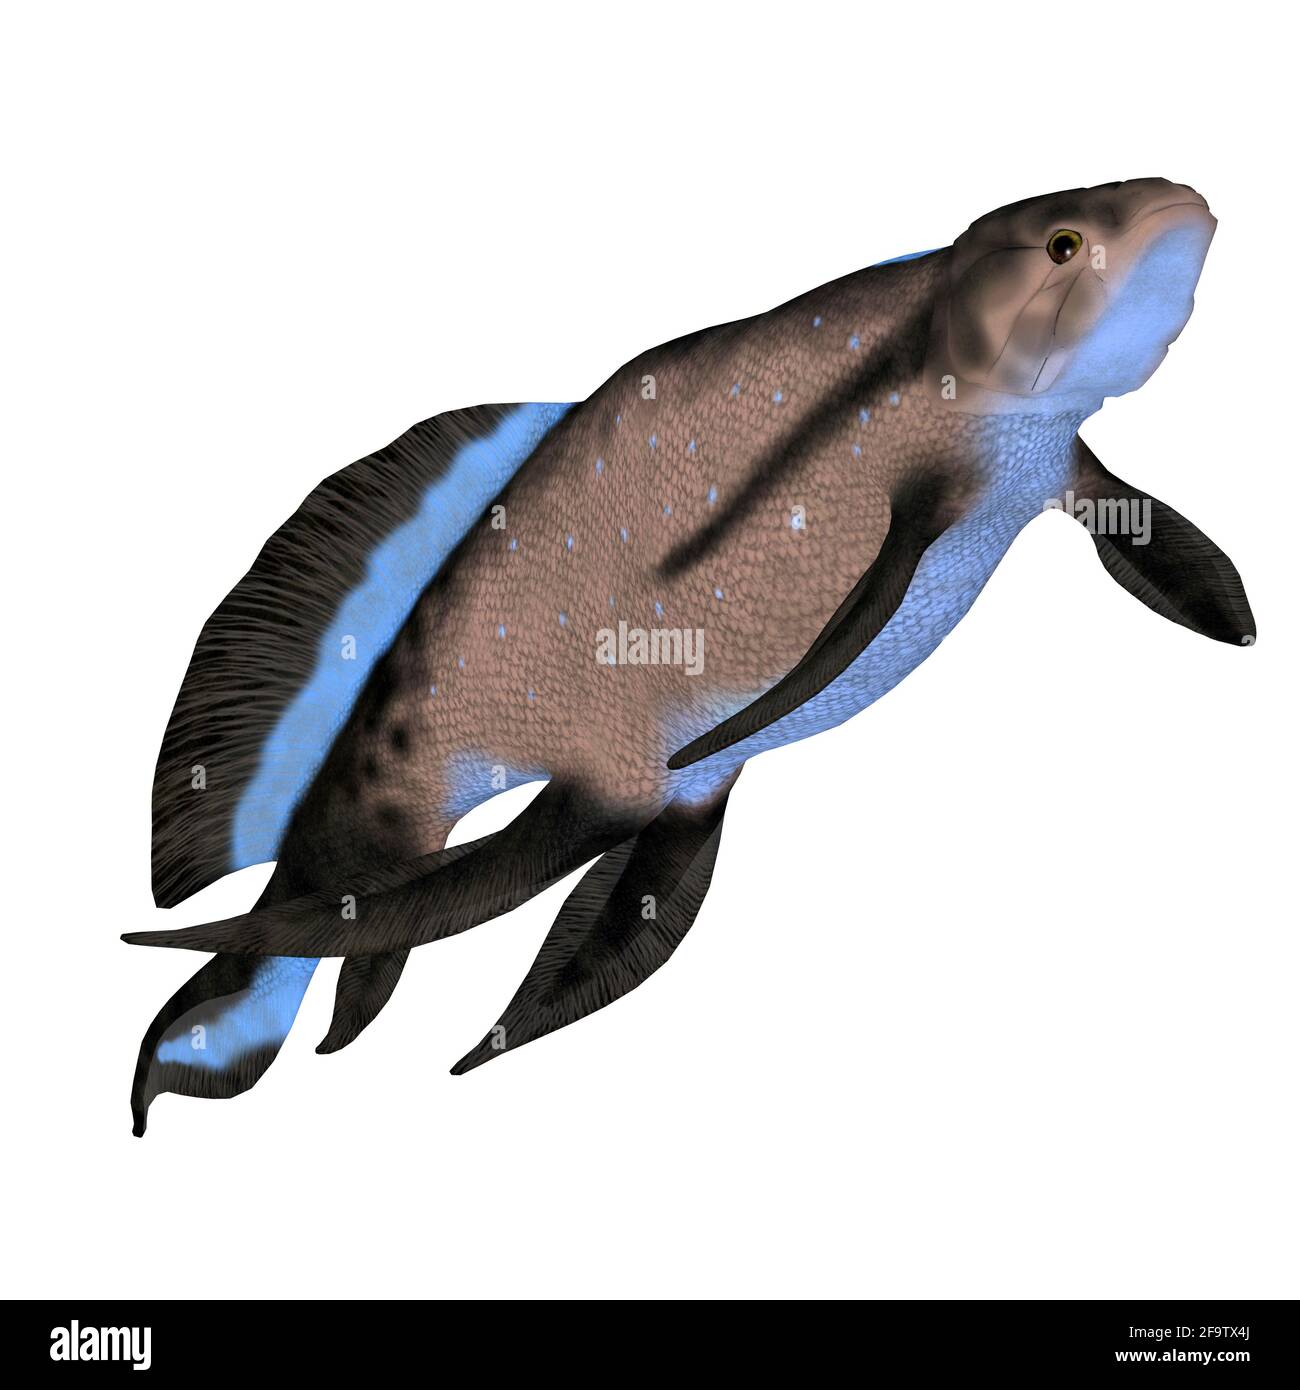 Scaumenacia es un pez depredador extinto que vivió en ambientes marinos durante el período Devoniano. Foto de stock